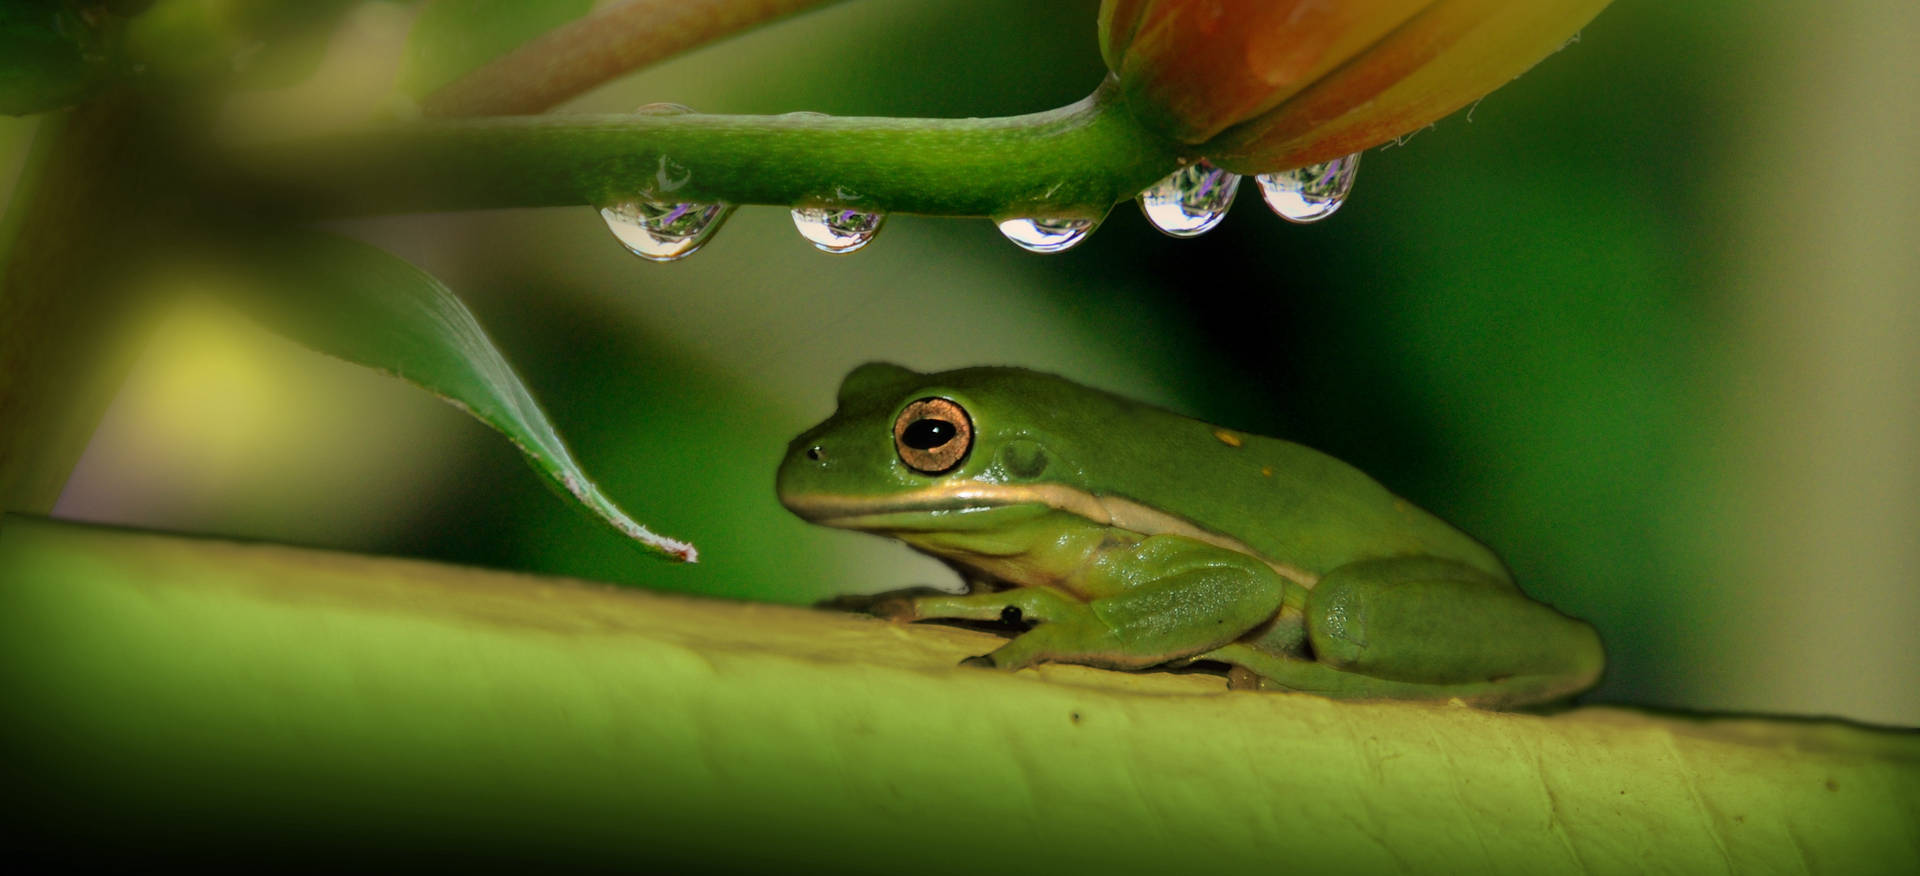 Green Frog Under Stem Background